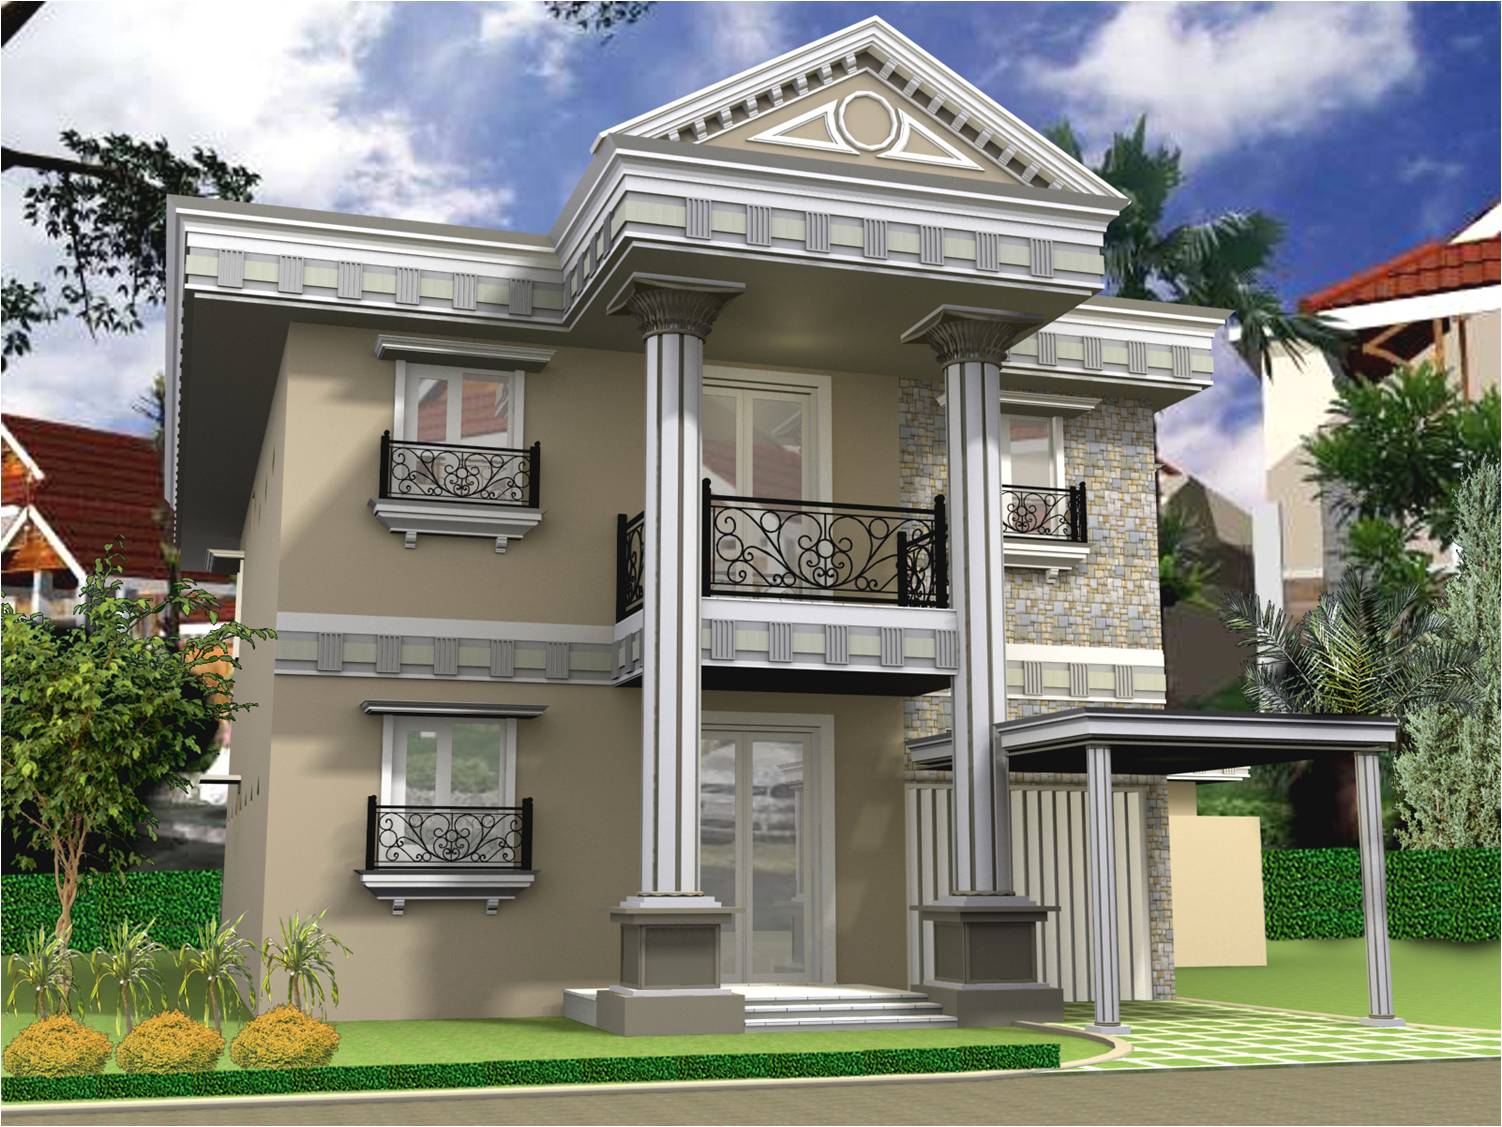 contoh model rumah minimalis 2 lantai terbaru contoh model rumah ...